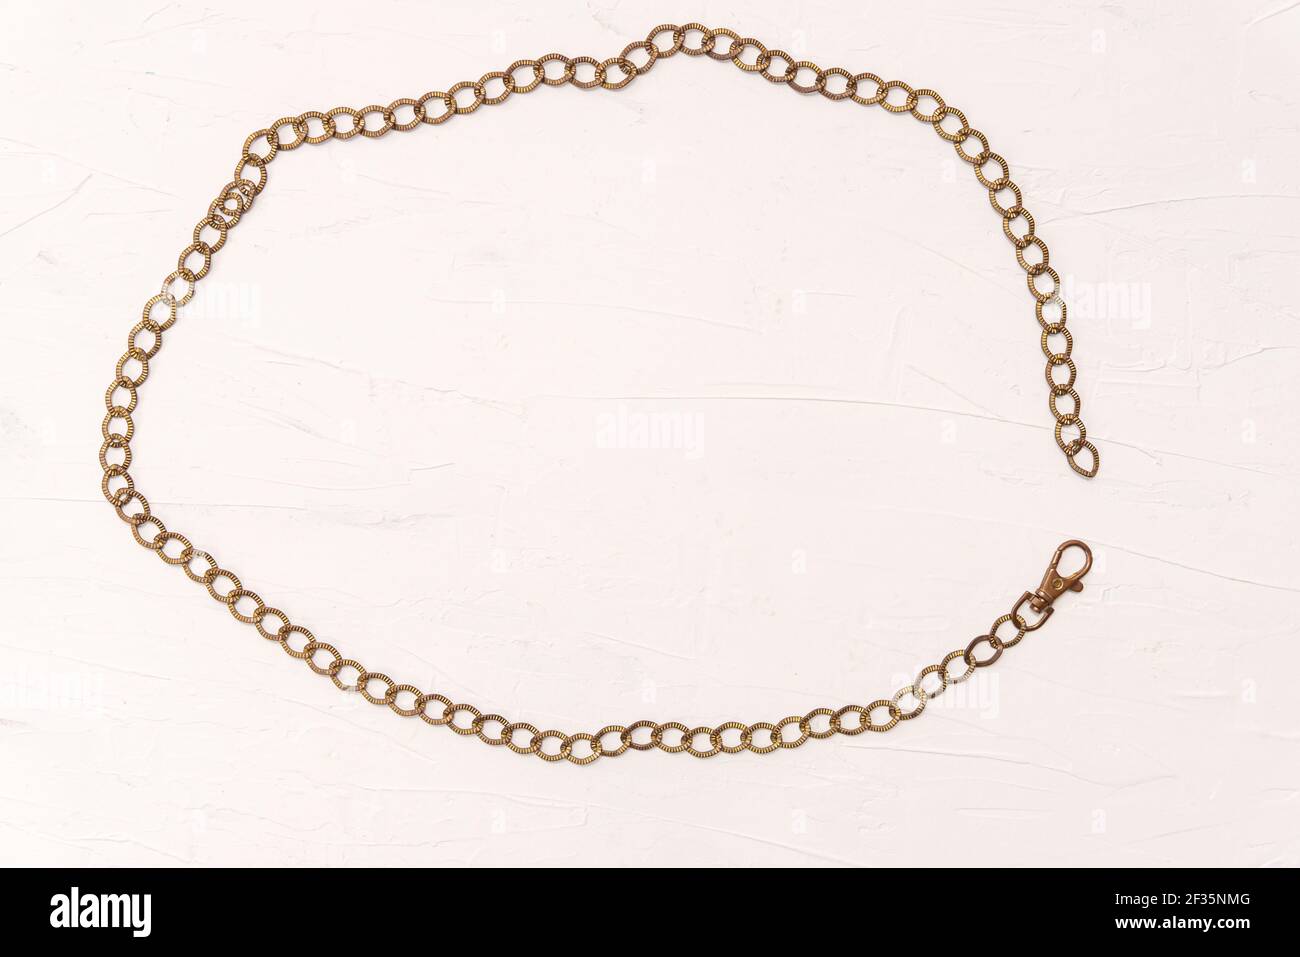 Cadre ovale rétro de l'accessoire de mode ancienne ceinture en métal doré chaîne avec fermoir ouvert dans un cadre arrondi sur fond blanc Banque D'Images